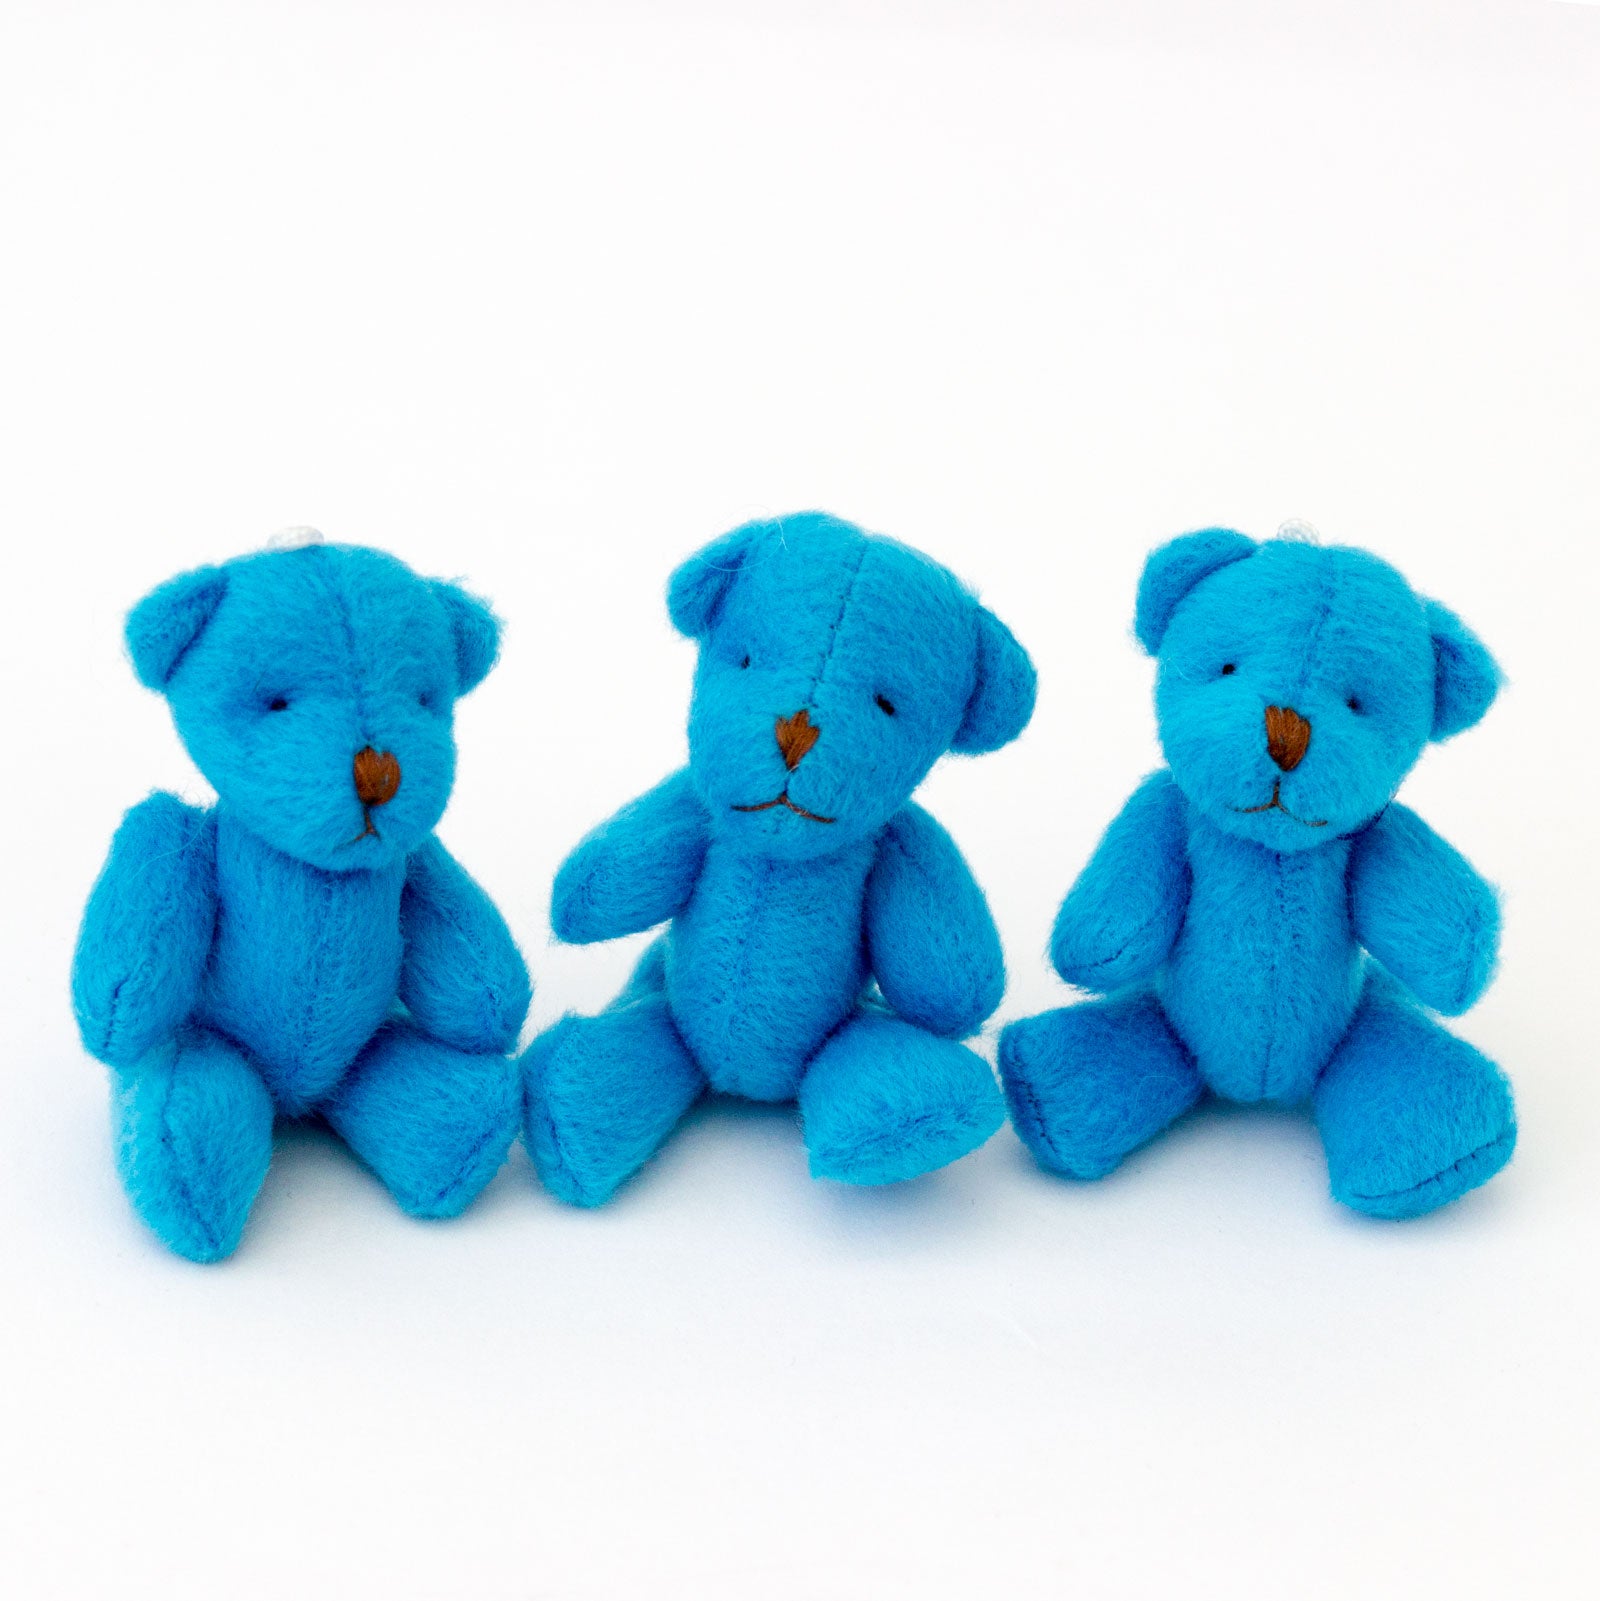 Small BLUE Teddy Bears X 55 - Cute Soft Adorable